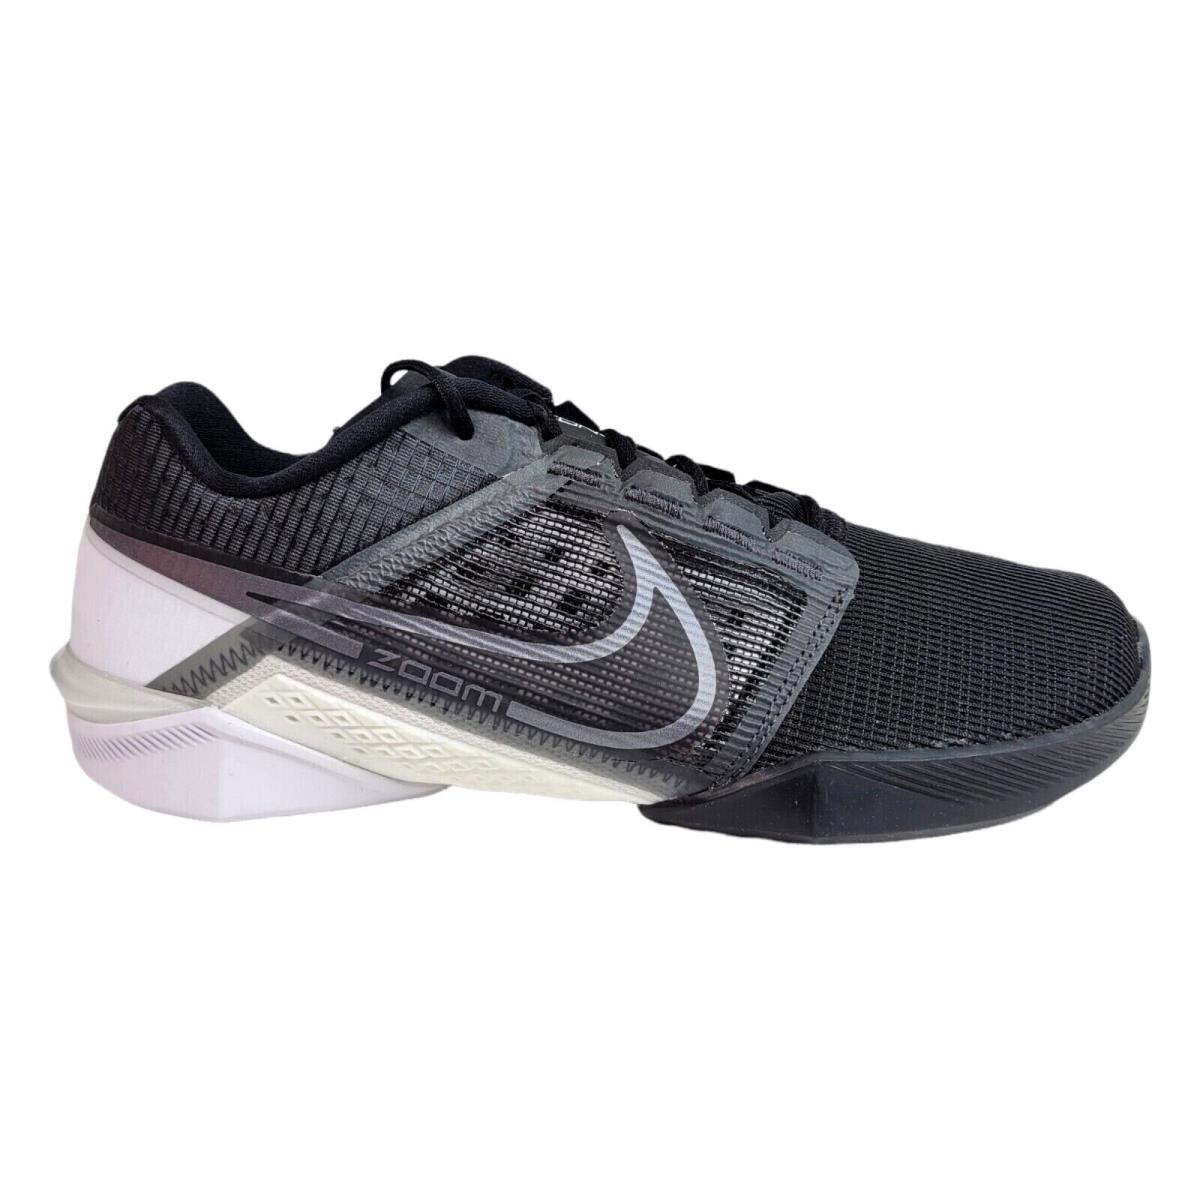 Nike Mens 9 Zoom Metcon Turbo 2 Training Crossfit Shoes Black Gray DH3392-010